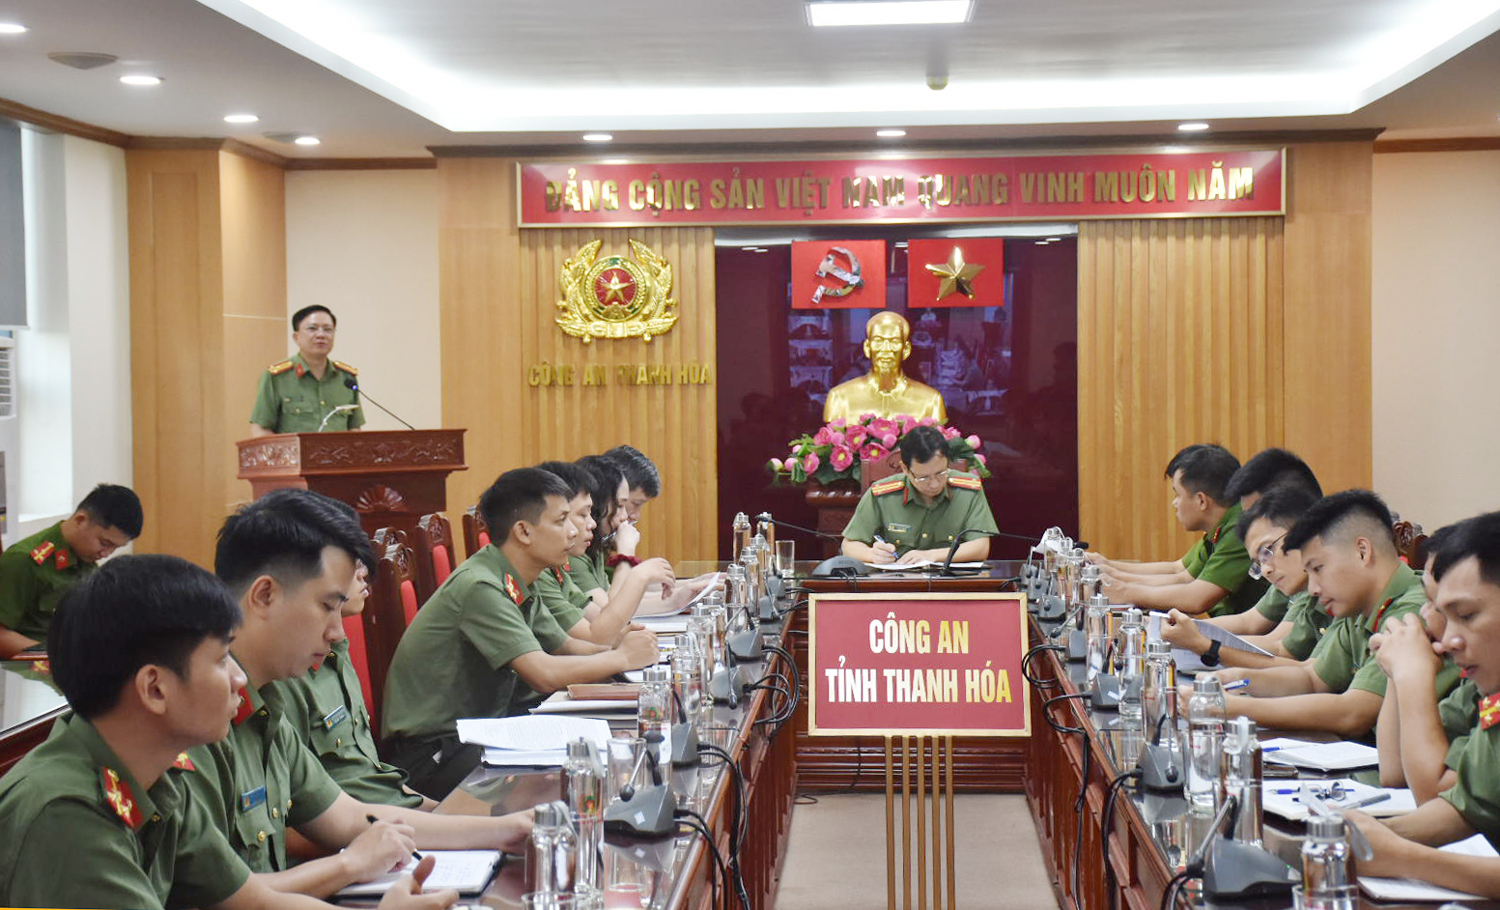 Lãnh đạo Phòng An ninh chính trị nội bộ thông báo một số nội dung liên quan đến các kỳ thi diễn ra trên địa bàn Thanh Hoá. (Ảnh: CATH)